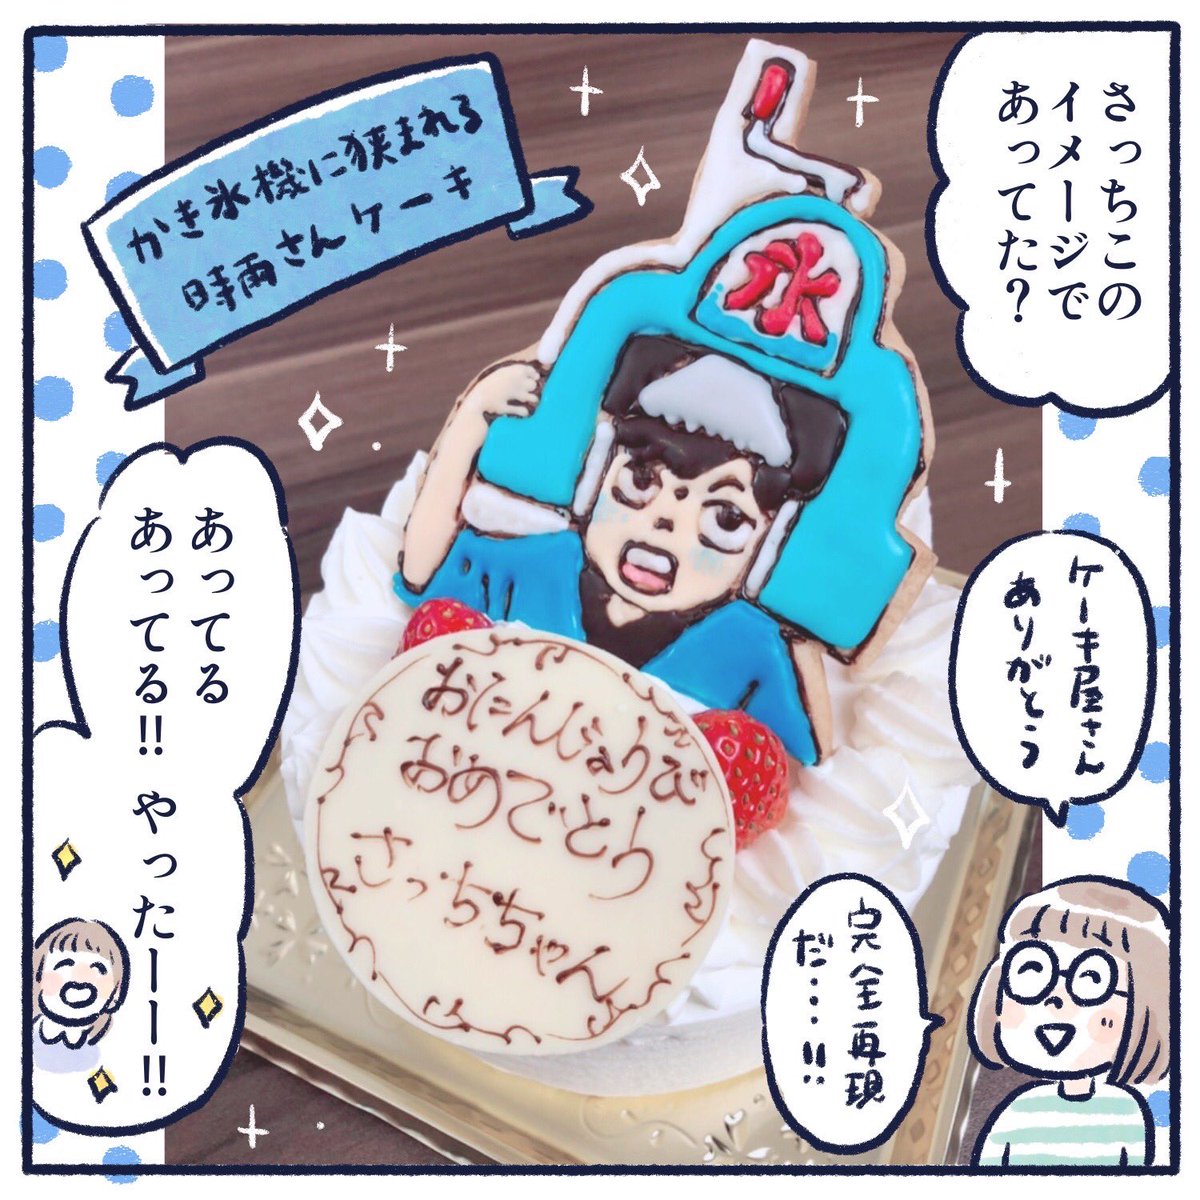 さっちの7歳の誕生日🤗(1/3)
素晴らしいケーキを作ってくださった
ケーキ屋さんに感謝🎂👏✨
パティシエさんはきっと気になりすぎて「かき氷機 挟まれる 男」でググッたことでしょう😊
#さっちととっくん #誕生日
#キラメイジャー #キラメイブルー
#押切時雨 #水石亜飛夢 兄さん 